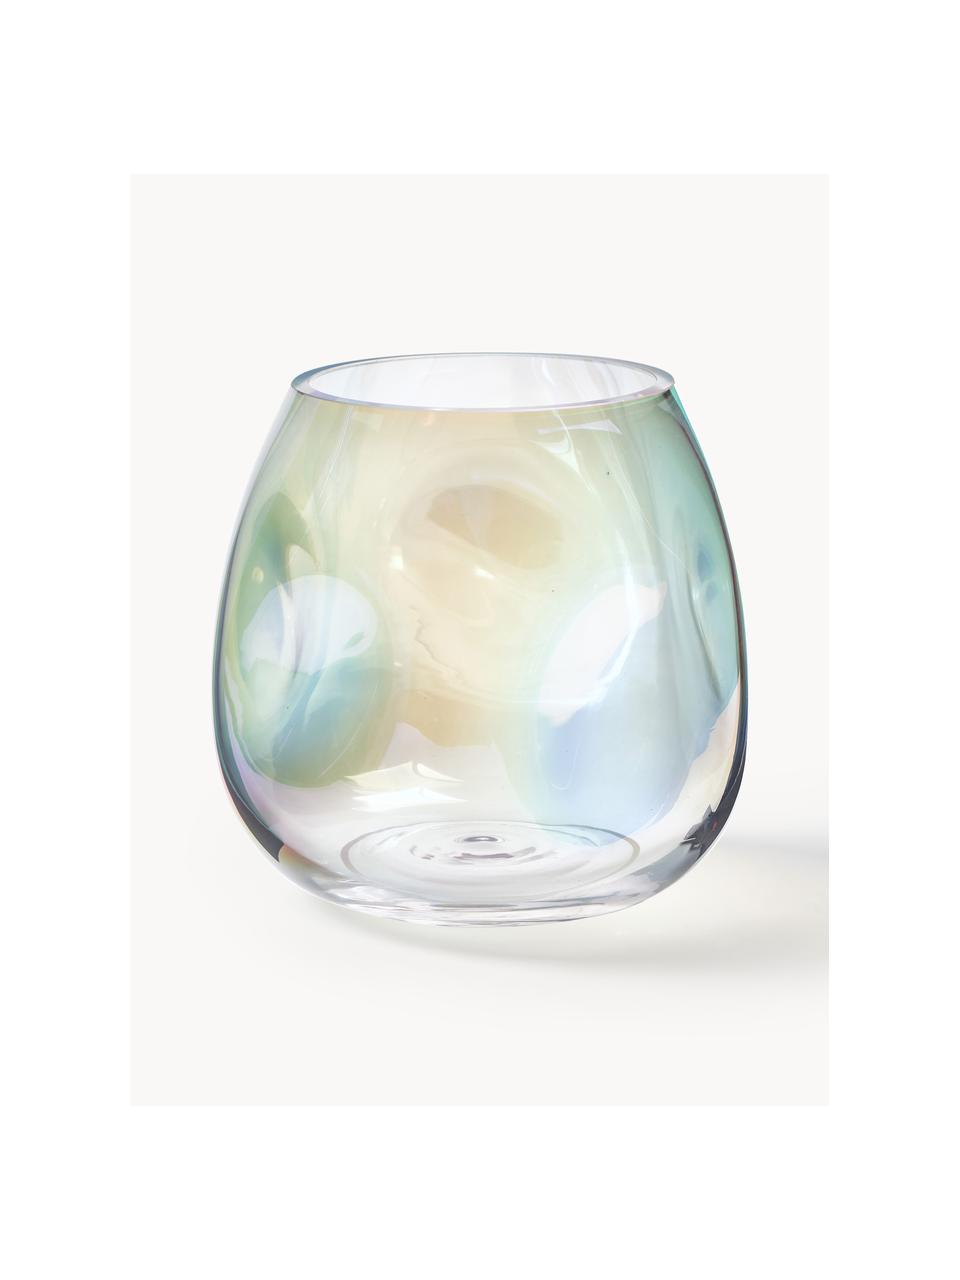 Vaso in vetro soffiato iridescente Rainbow, alt. 17 cm, Vetro soffiato, Trasparente, iridescente, Ø 17 x Alt. 17 cm